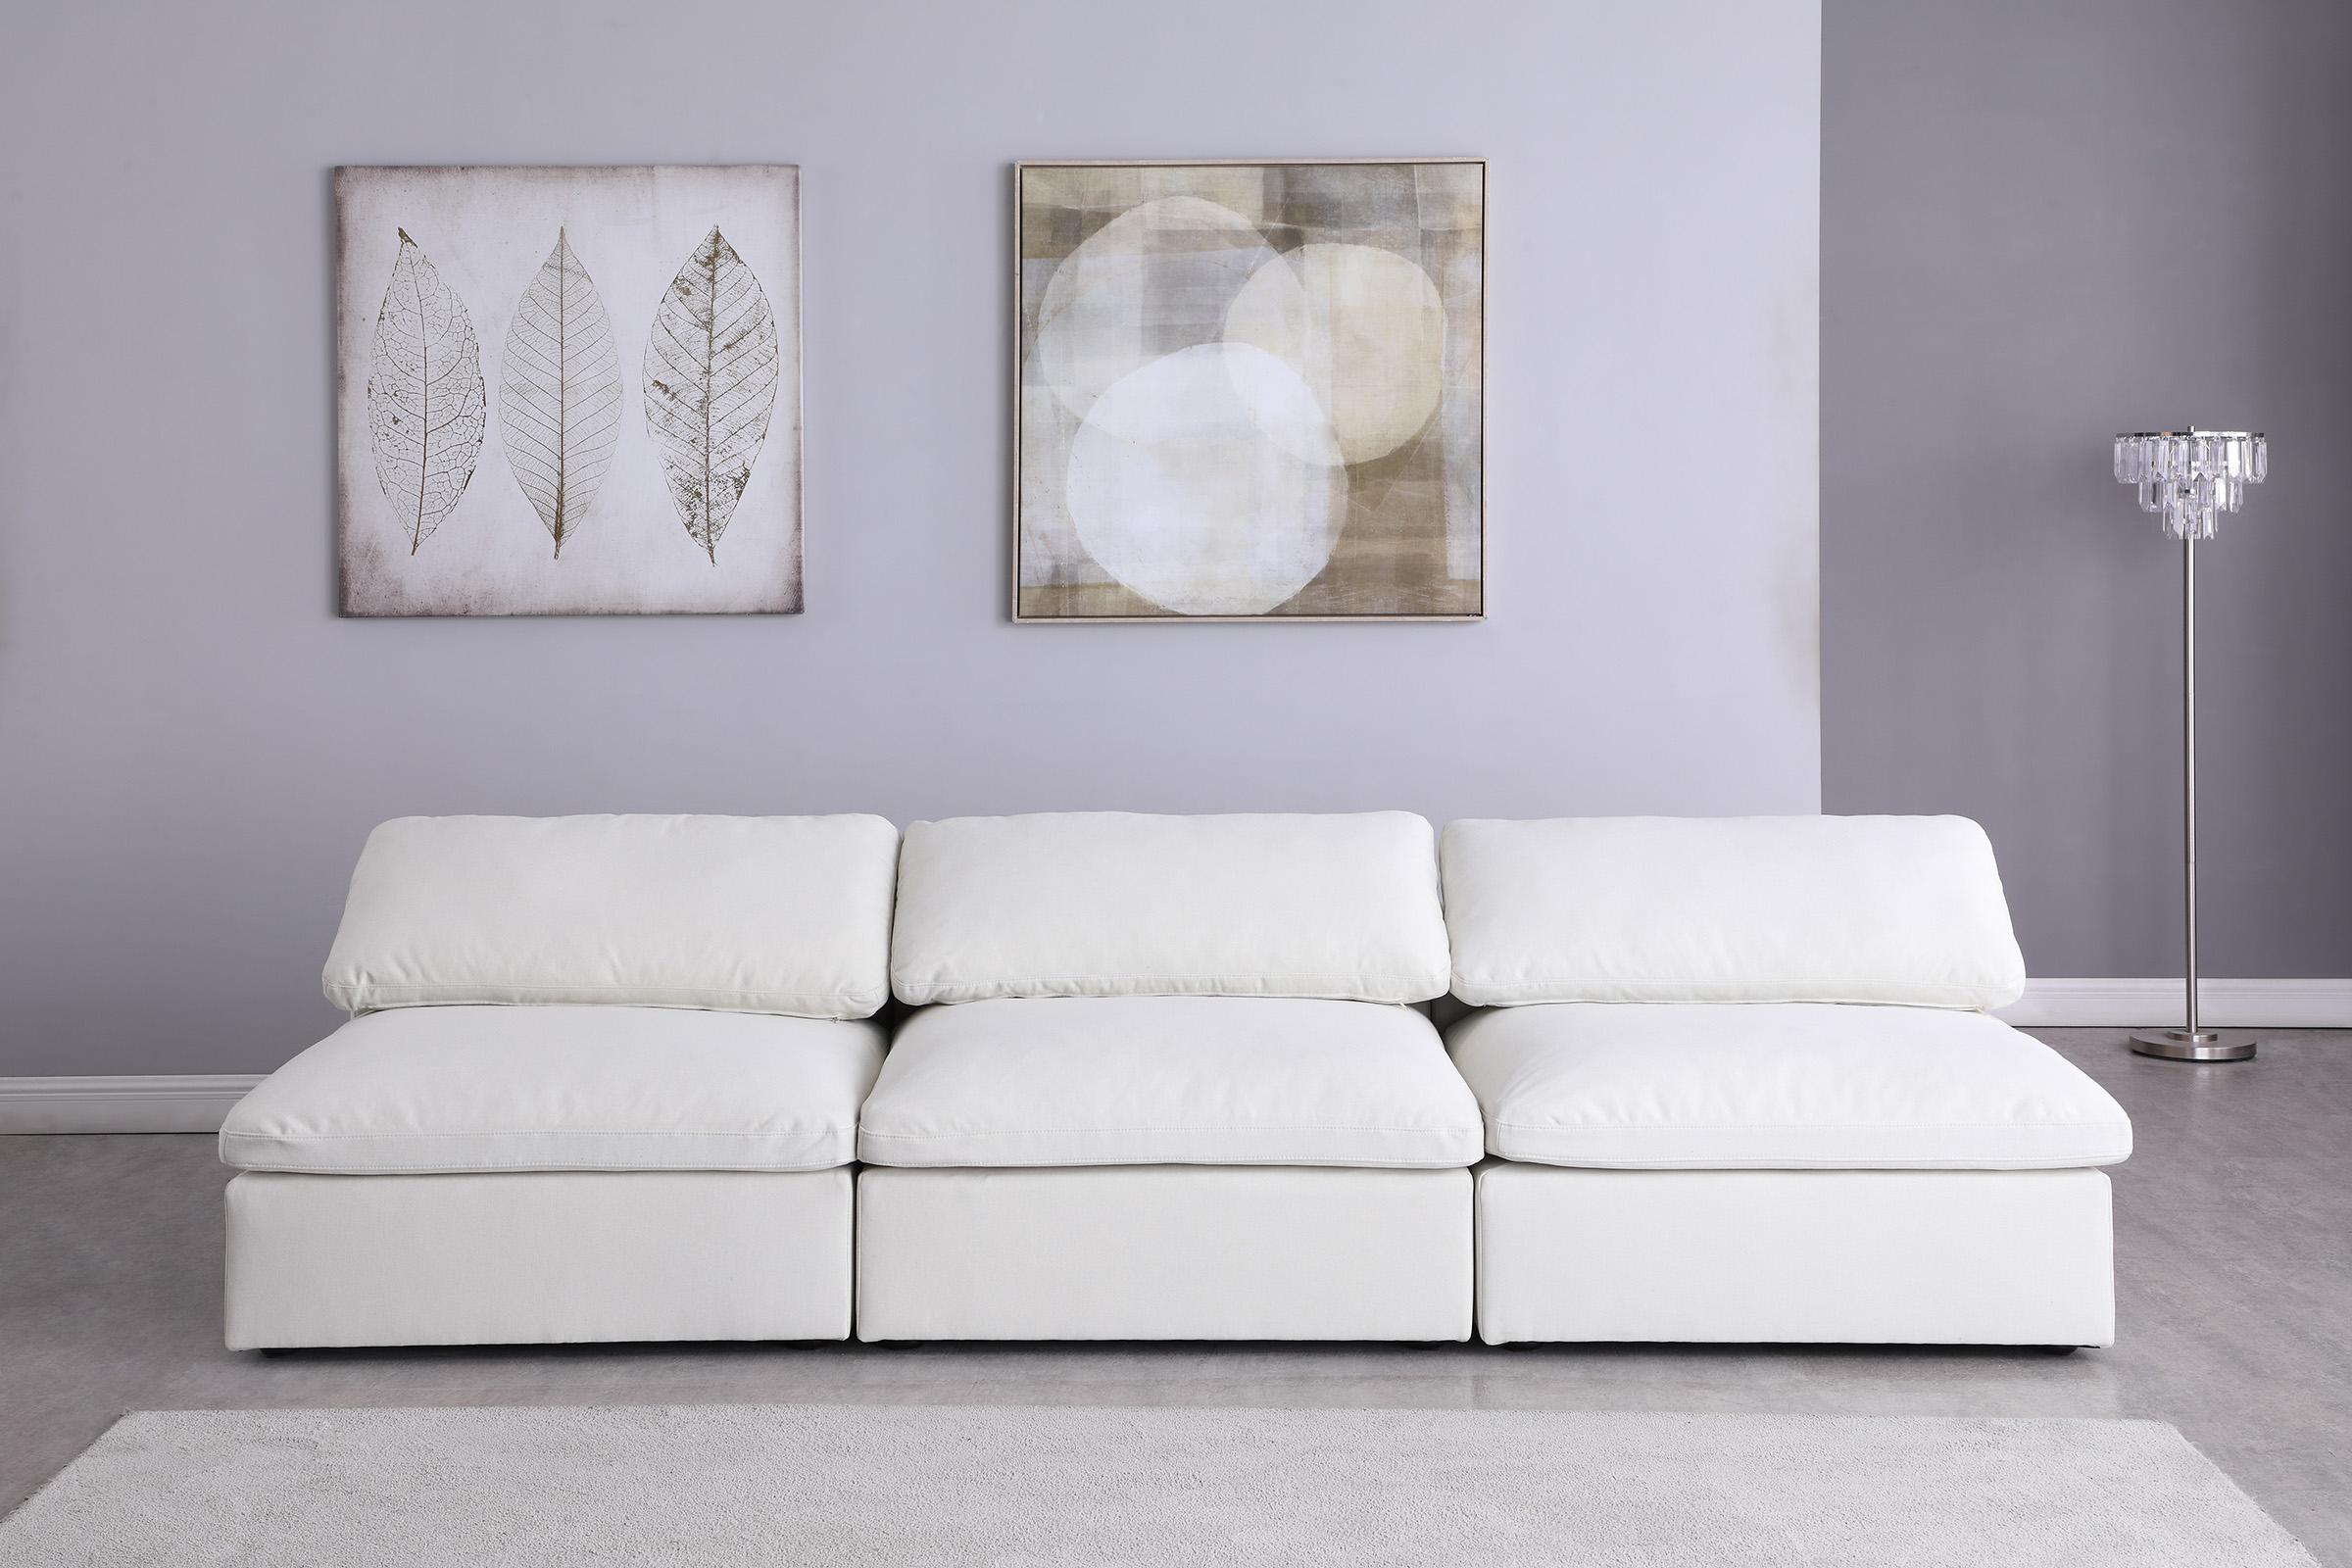 

    
Meridian Furniture SERENE 601Cream-S117 Modular Sofa Cream 601Cream-S117
